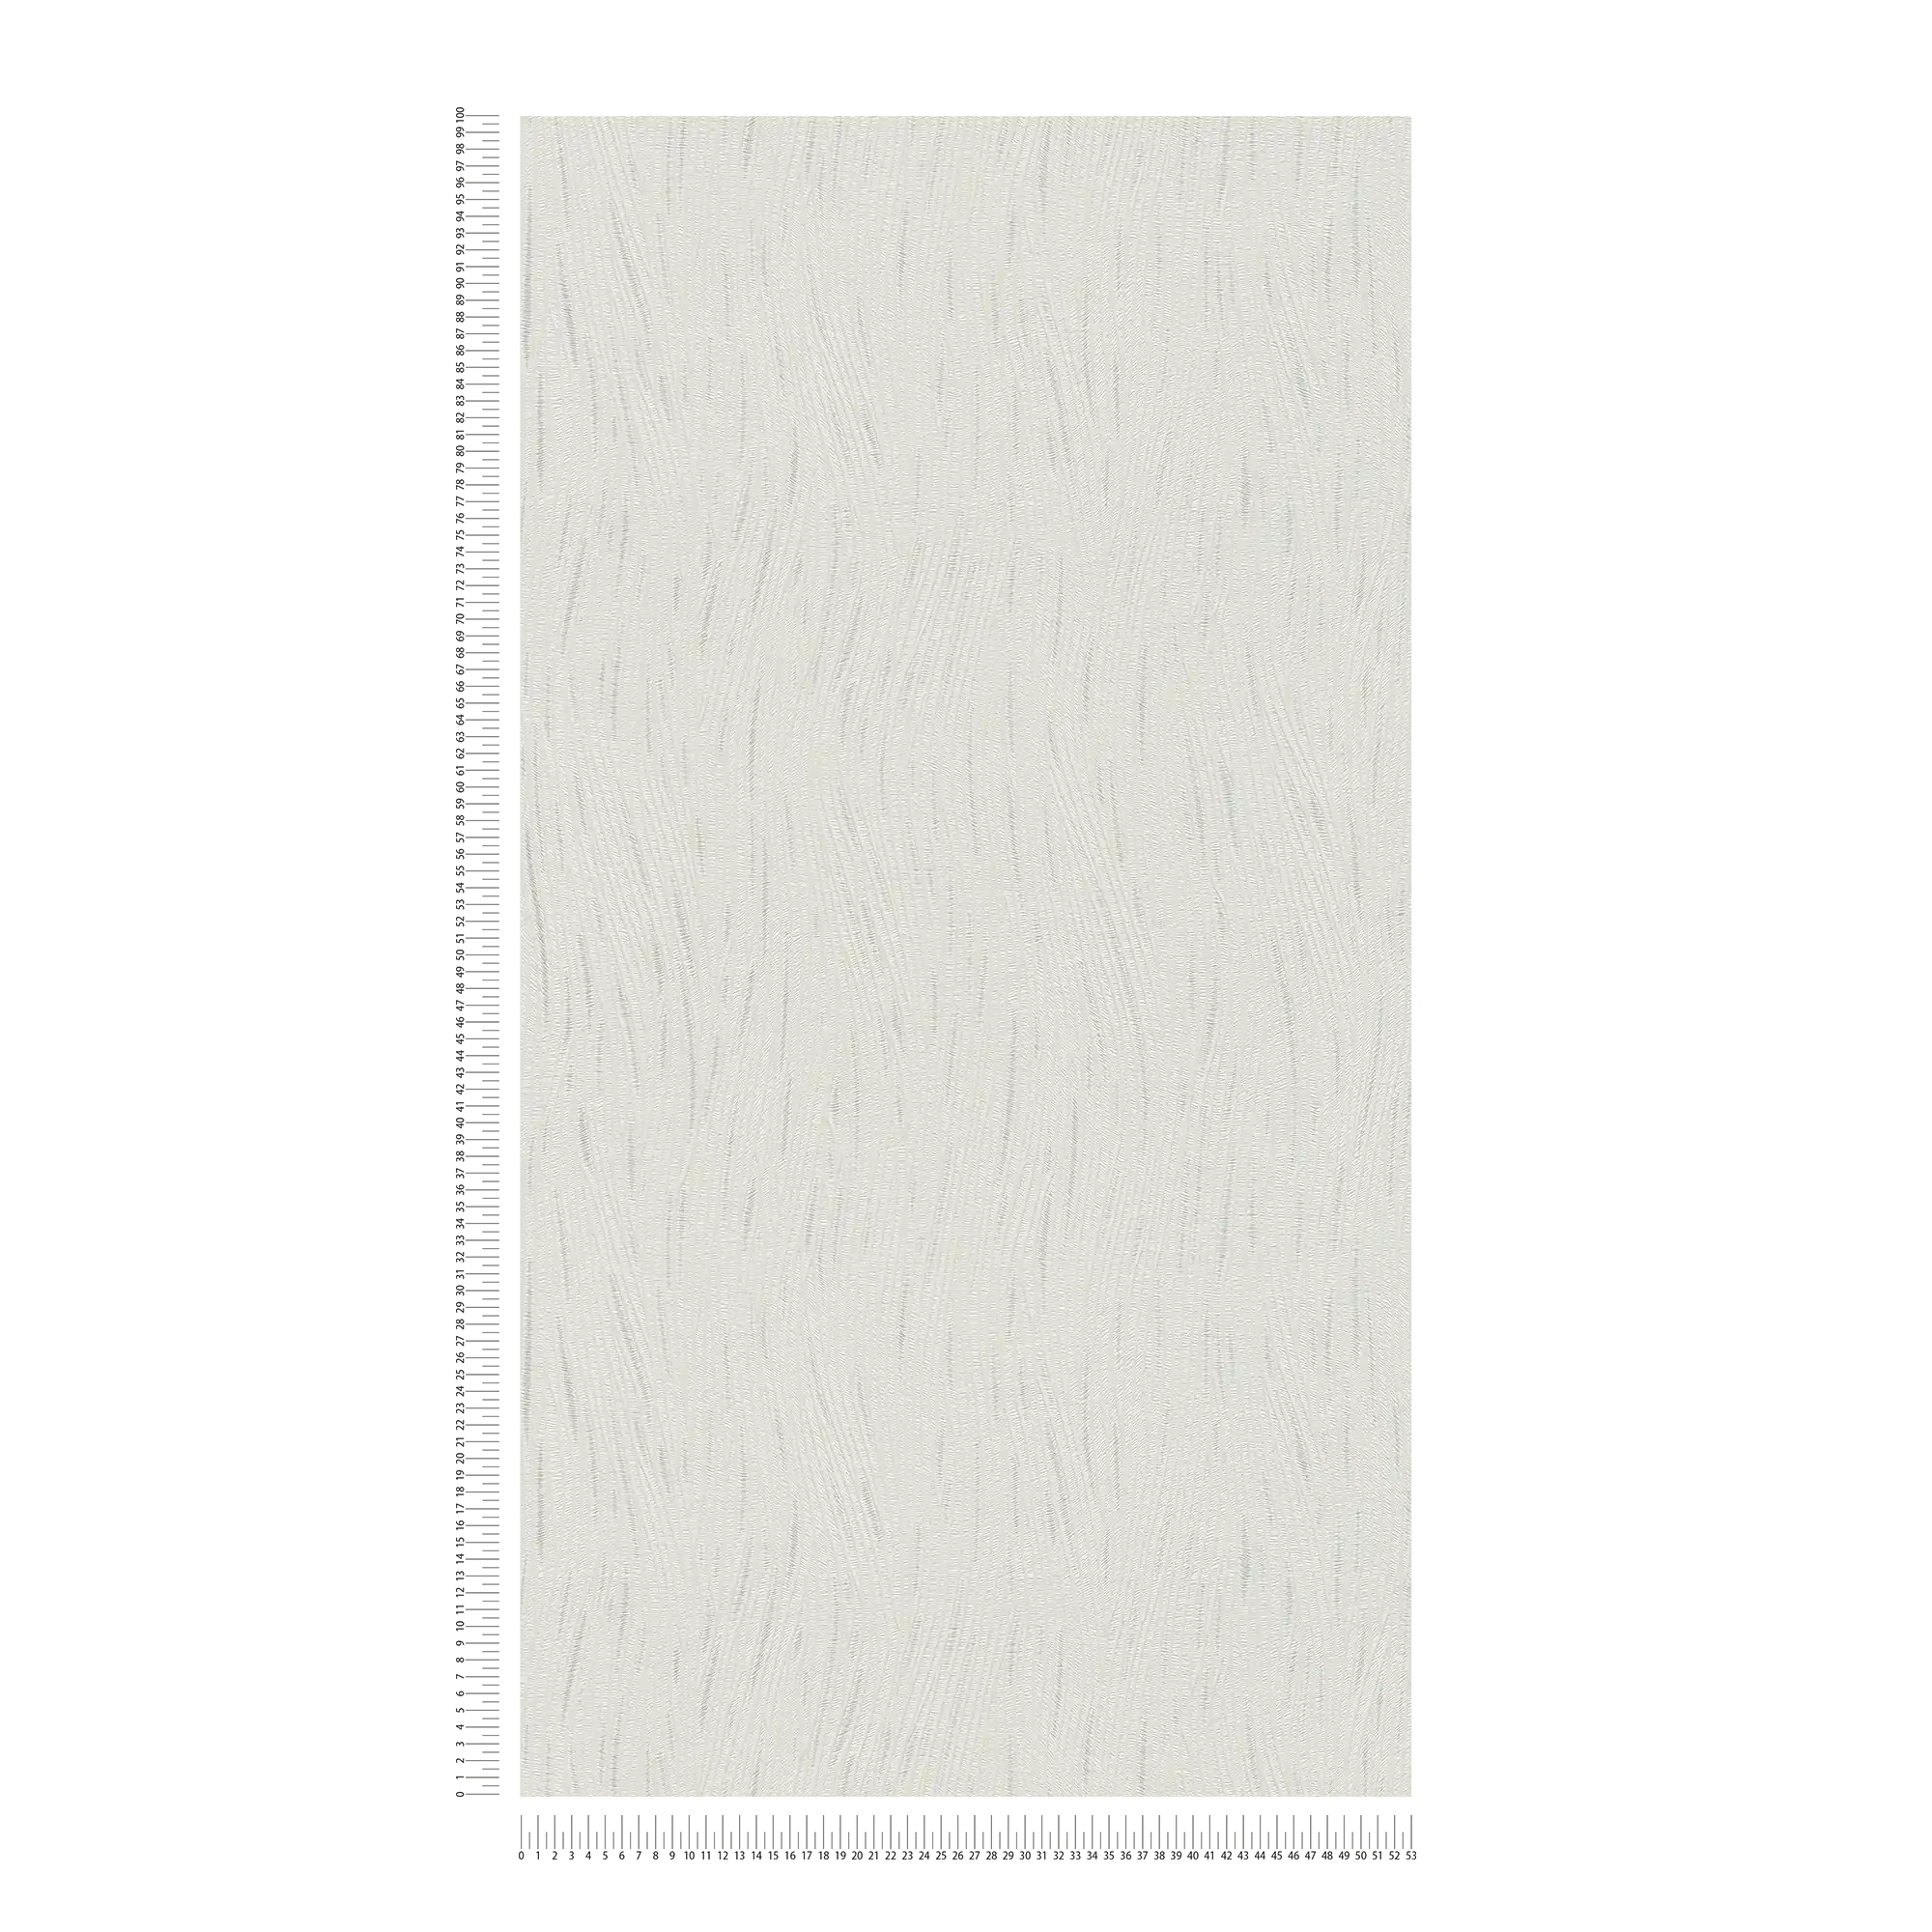             Grafiktapete mit wellenartigem Linienmuster und Metallic-Akzenten – Weiß, Silber
        